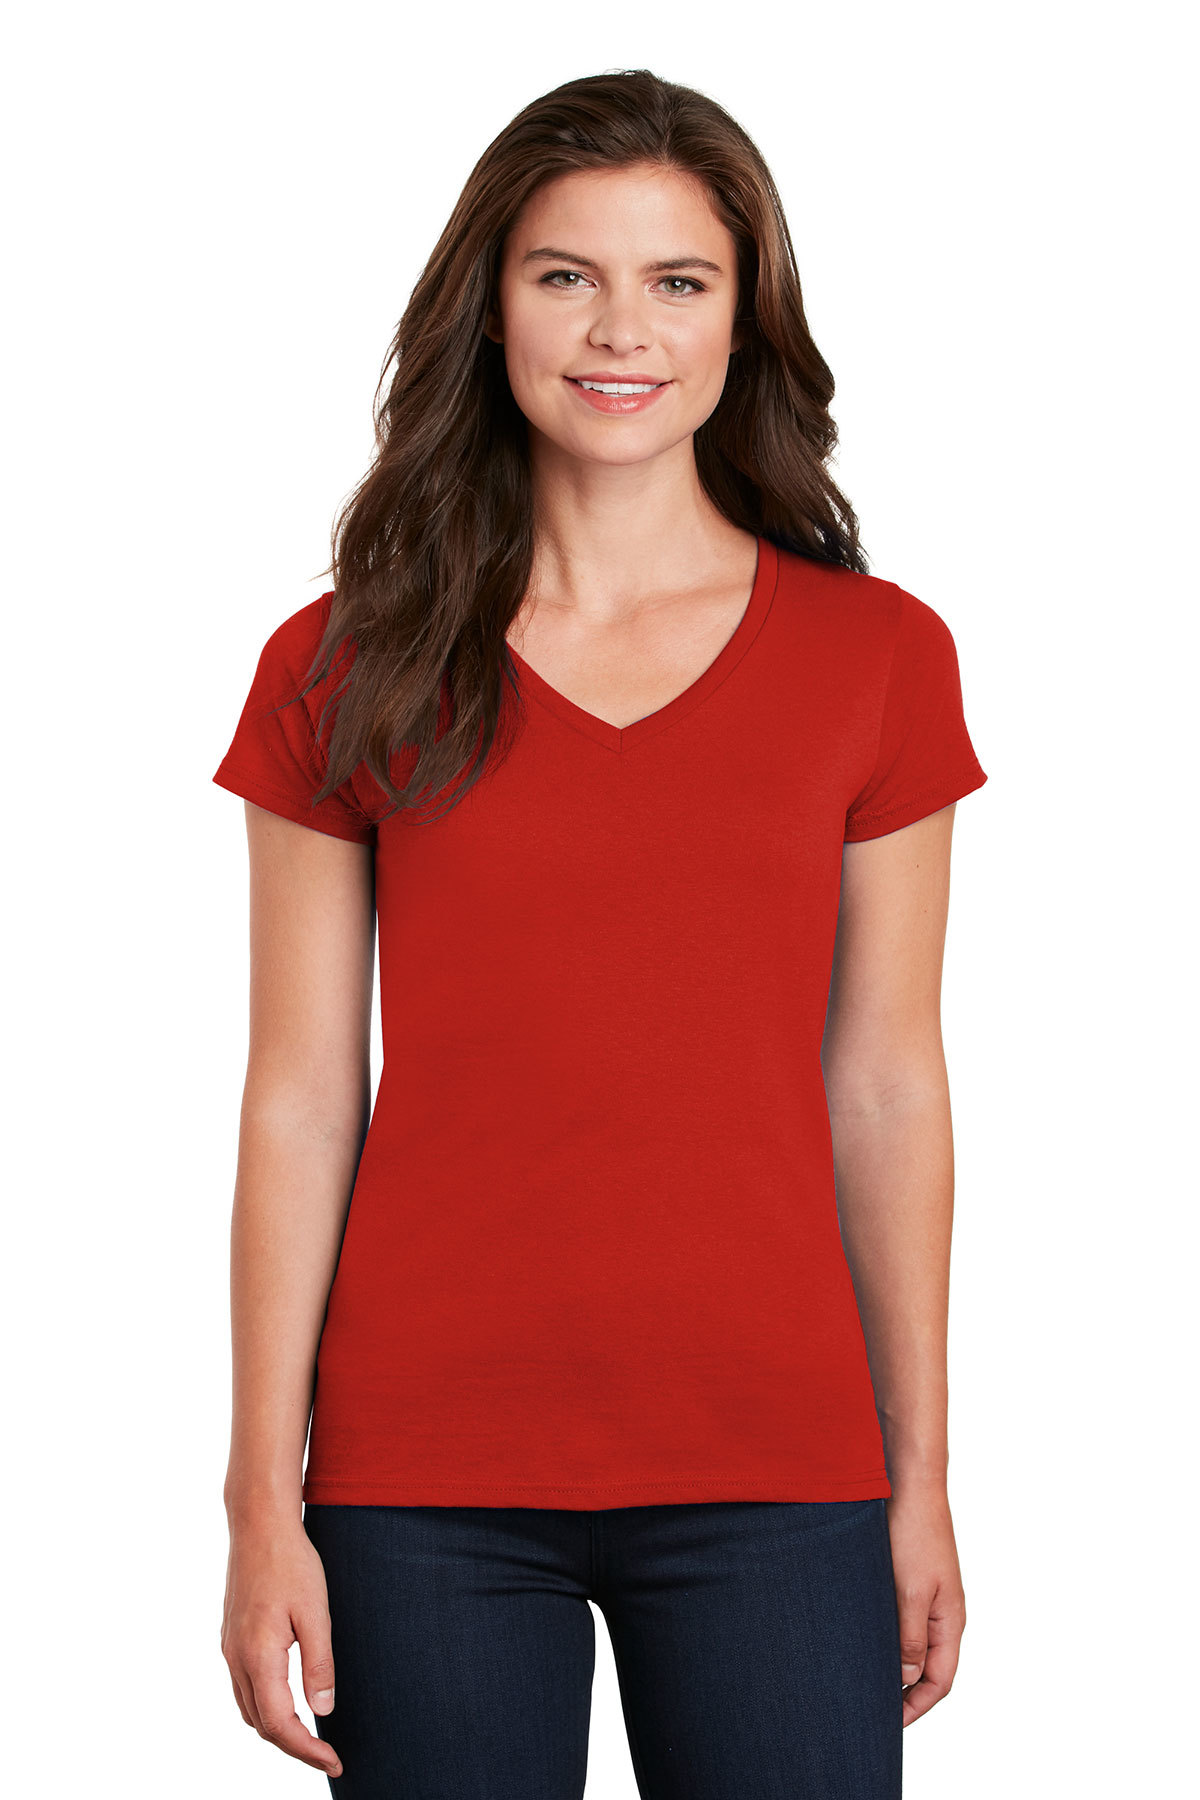 Gildan Ladies Heavy Cotton 100% Cotton V-Neck T-Shirt | Product